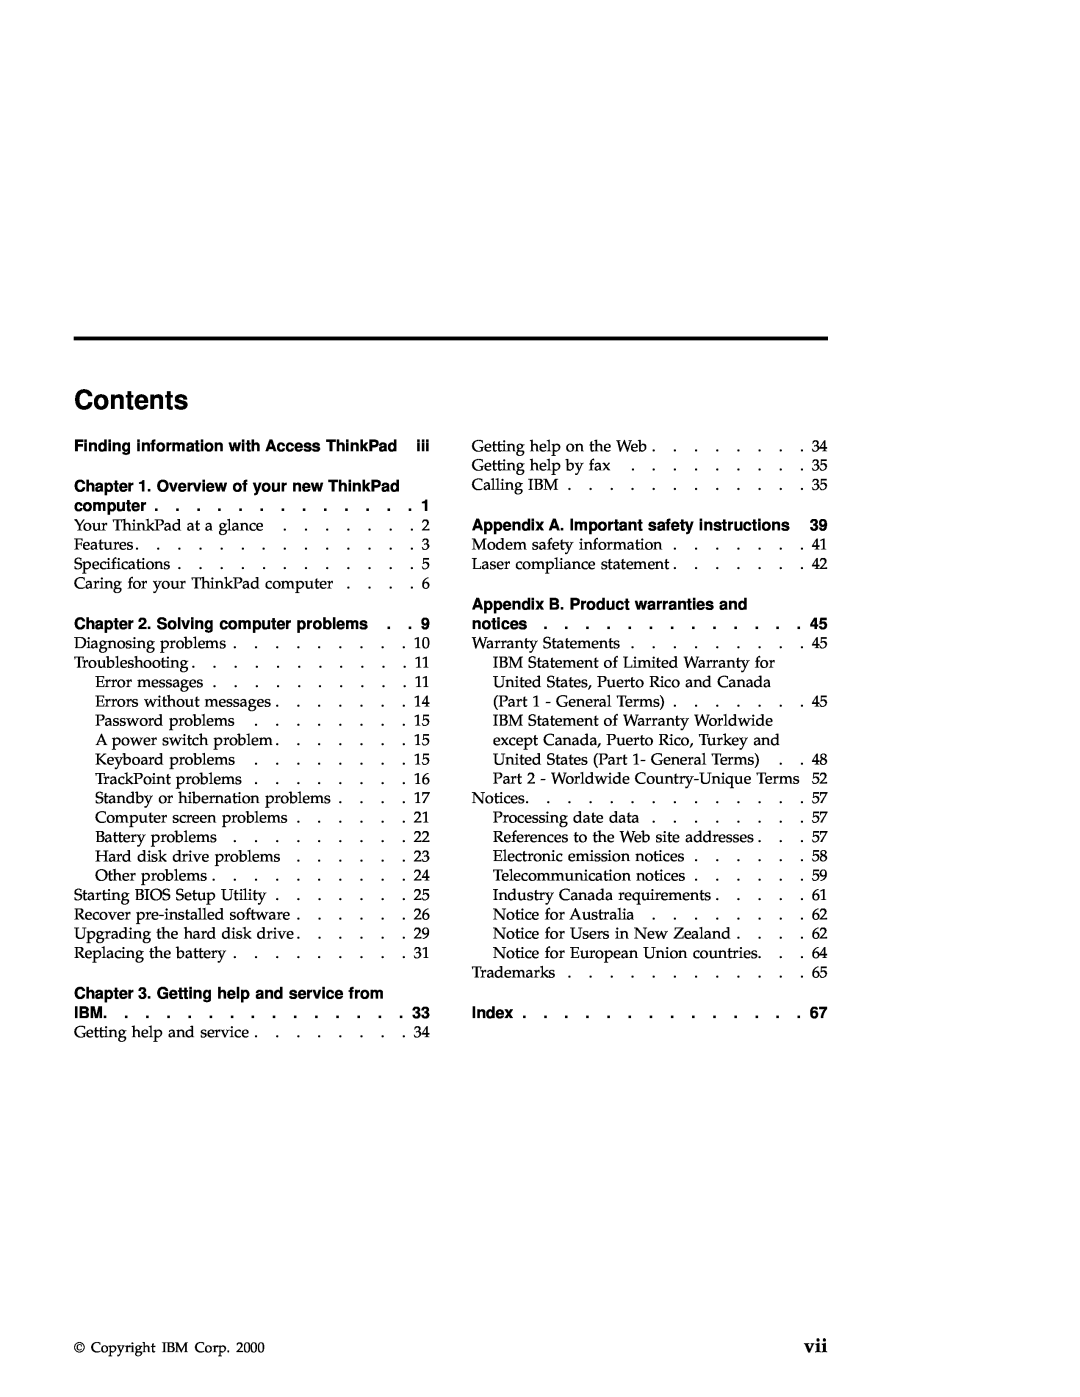 IBM A21e manual Contents 